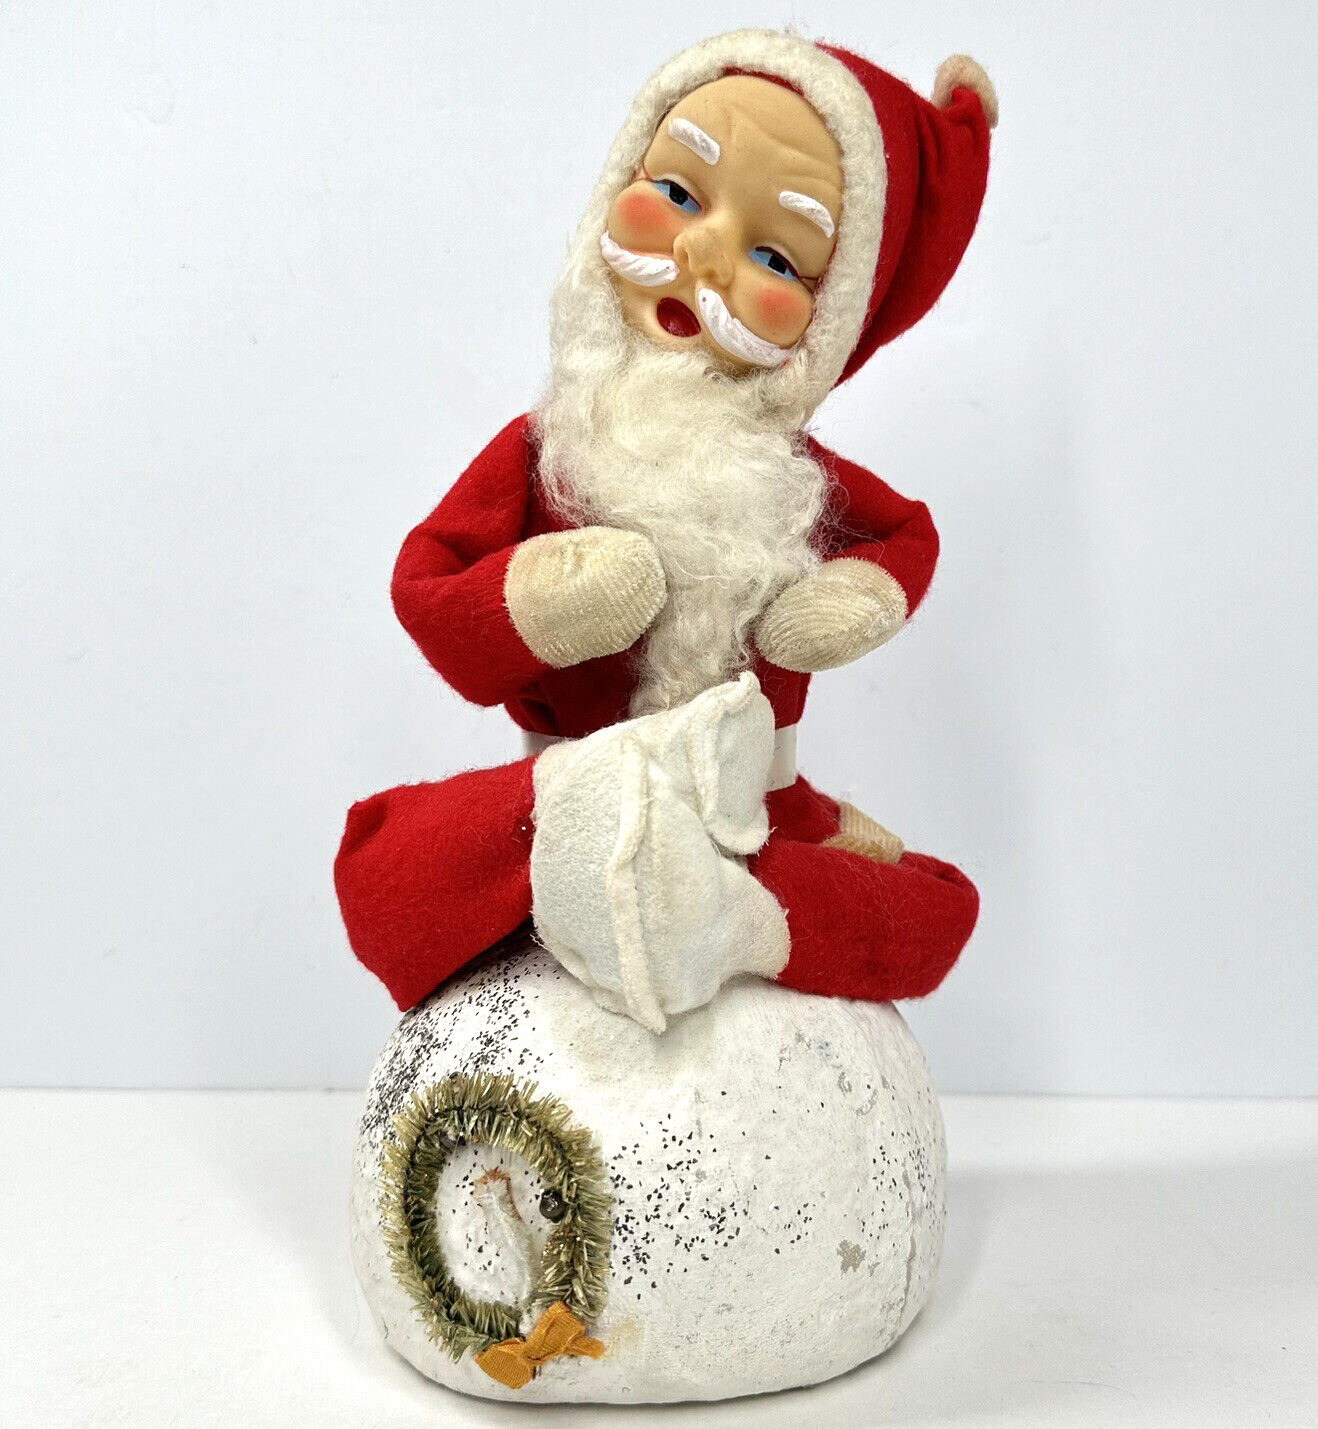 Christmas Santa Claus PAPER MACHE ON SNOWBALL Bottle Brush Wreath Felt VTG